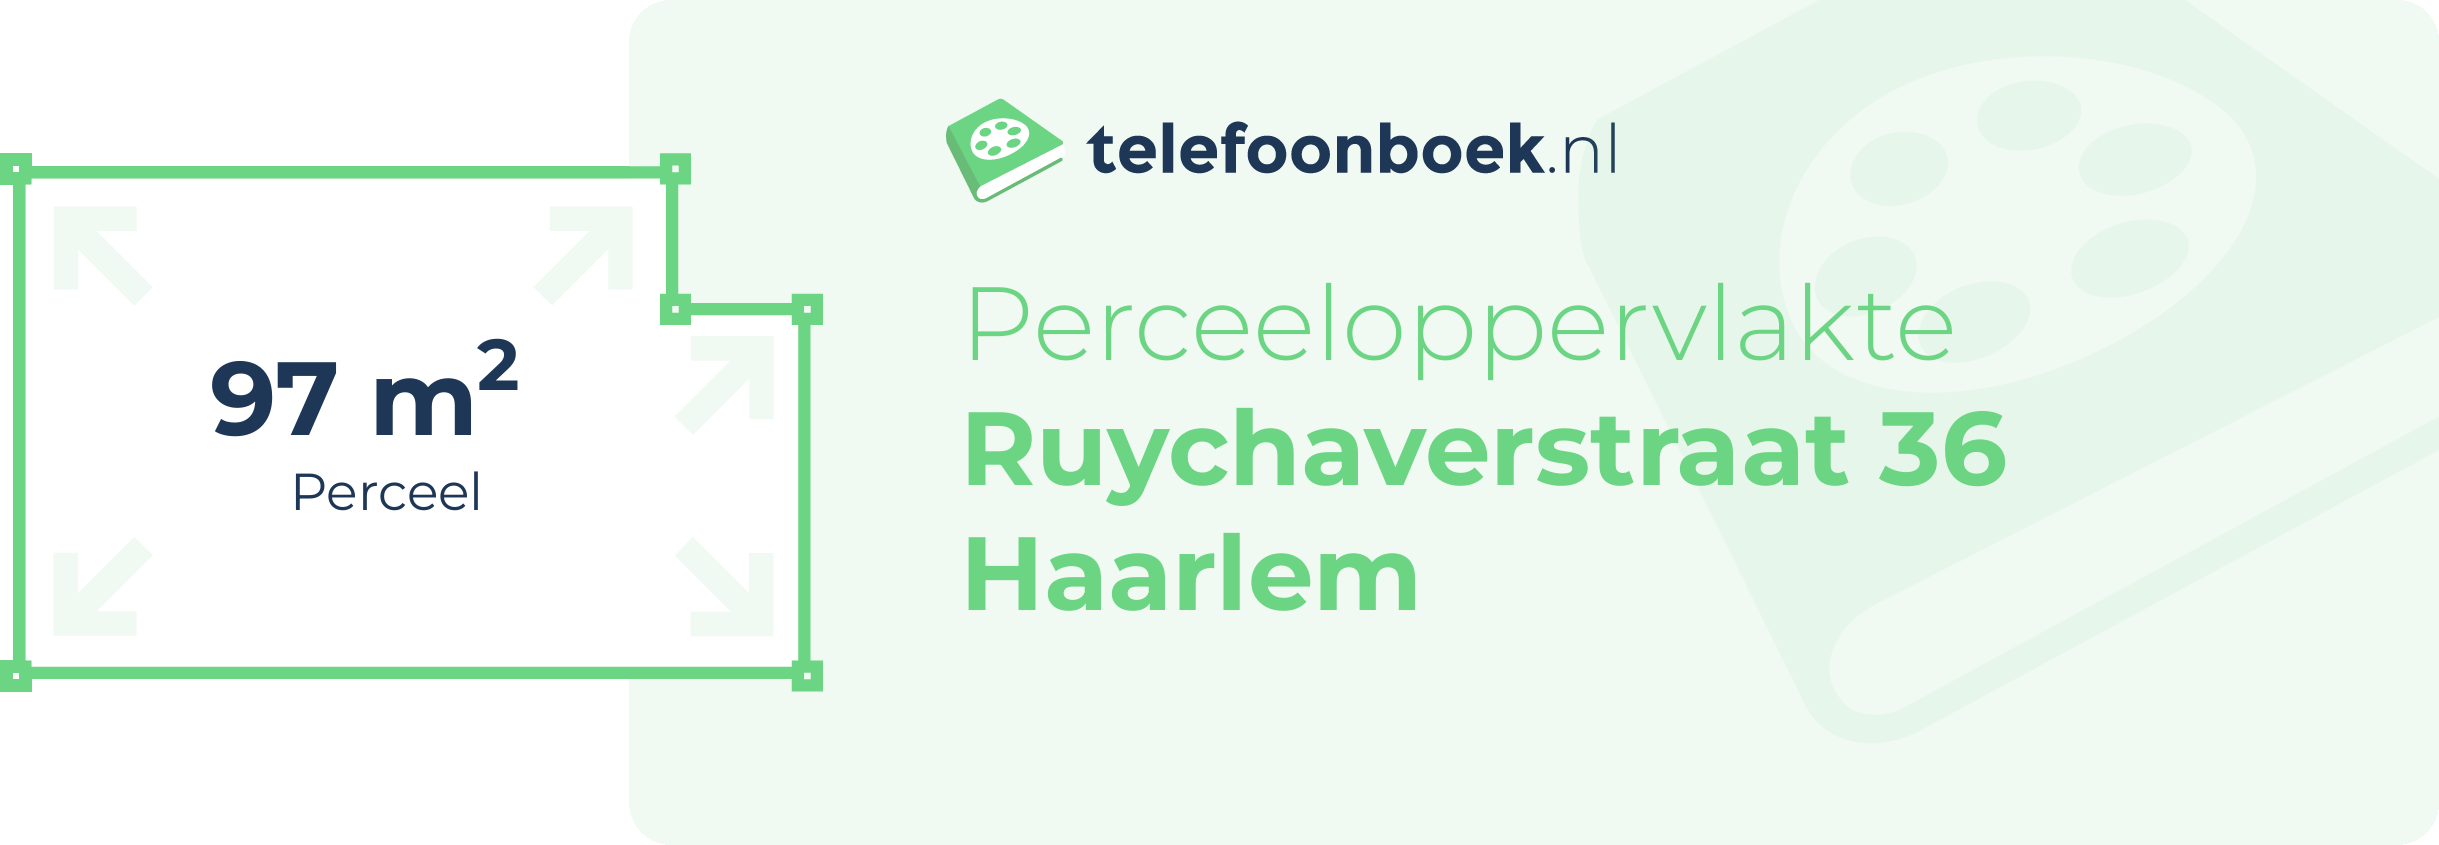 Perceeloppervlakte Ruychaverstraat 36 Haarlem